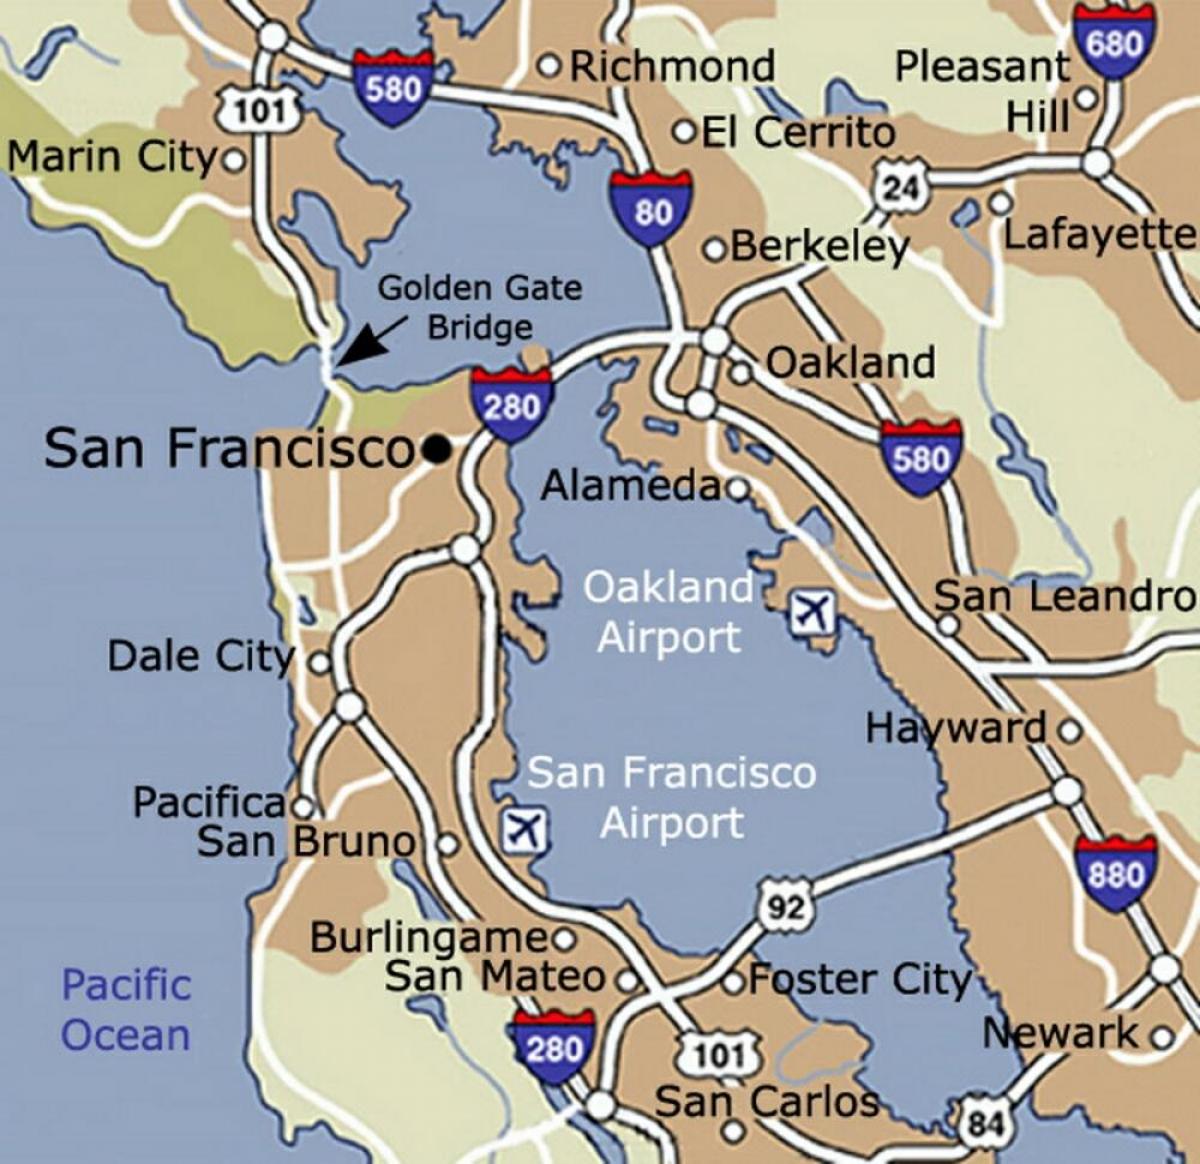 Kaart van de luchthaven van San Francisco en omgeving